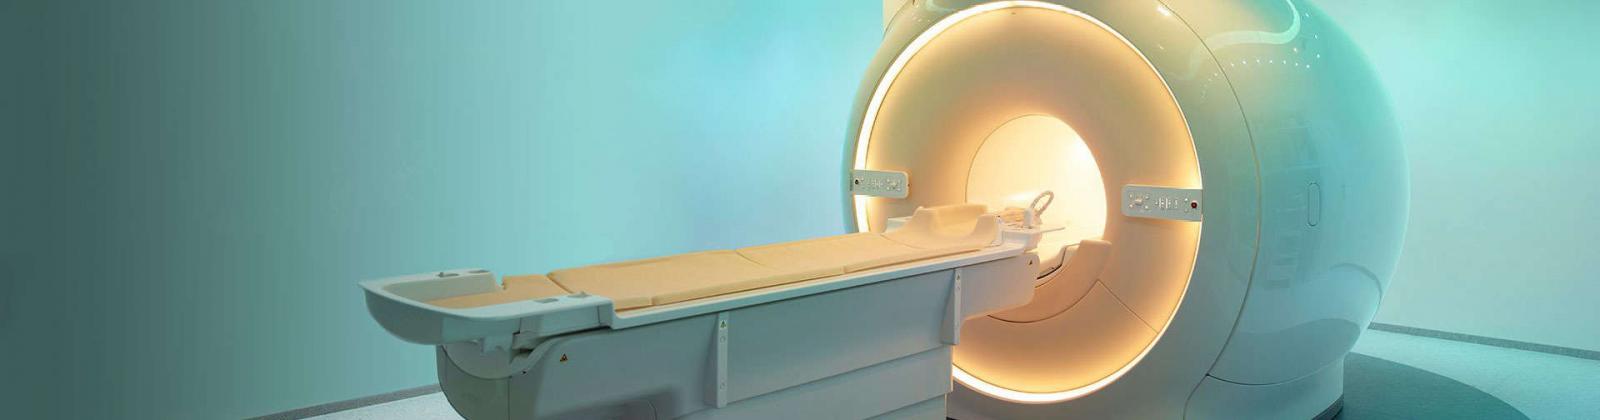 Servei integral personalitzat per a projectes d’investigació amb imatges cerebrals per ressonància magnètica